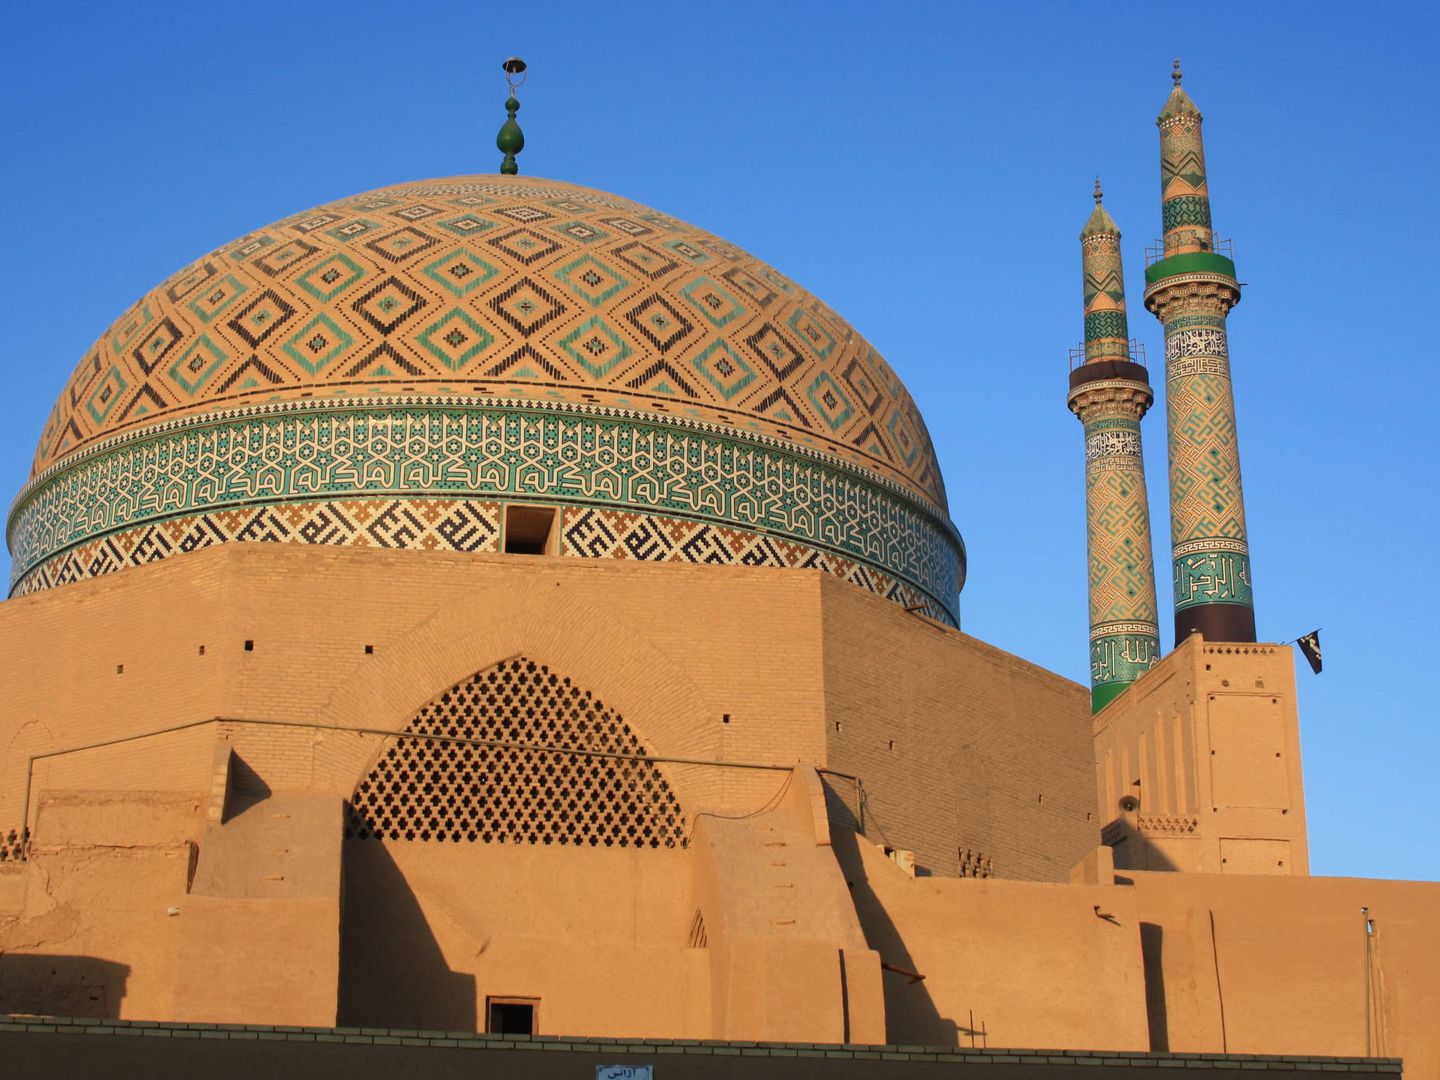 Mezquita Jame en Yazd (Irán), otro de los destinos en auge.